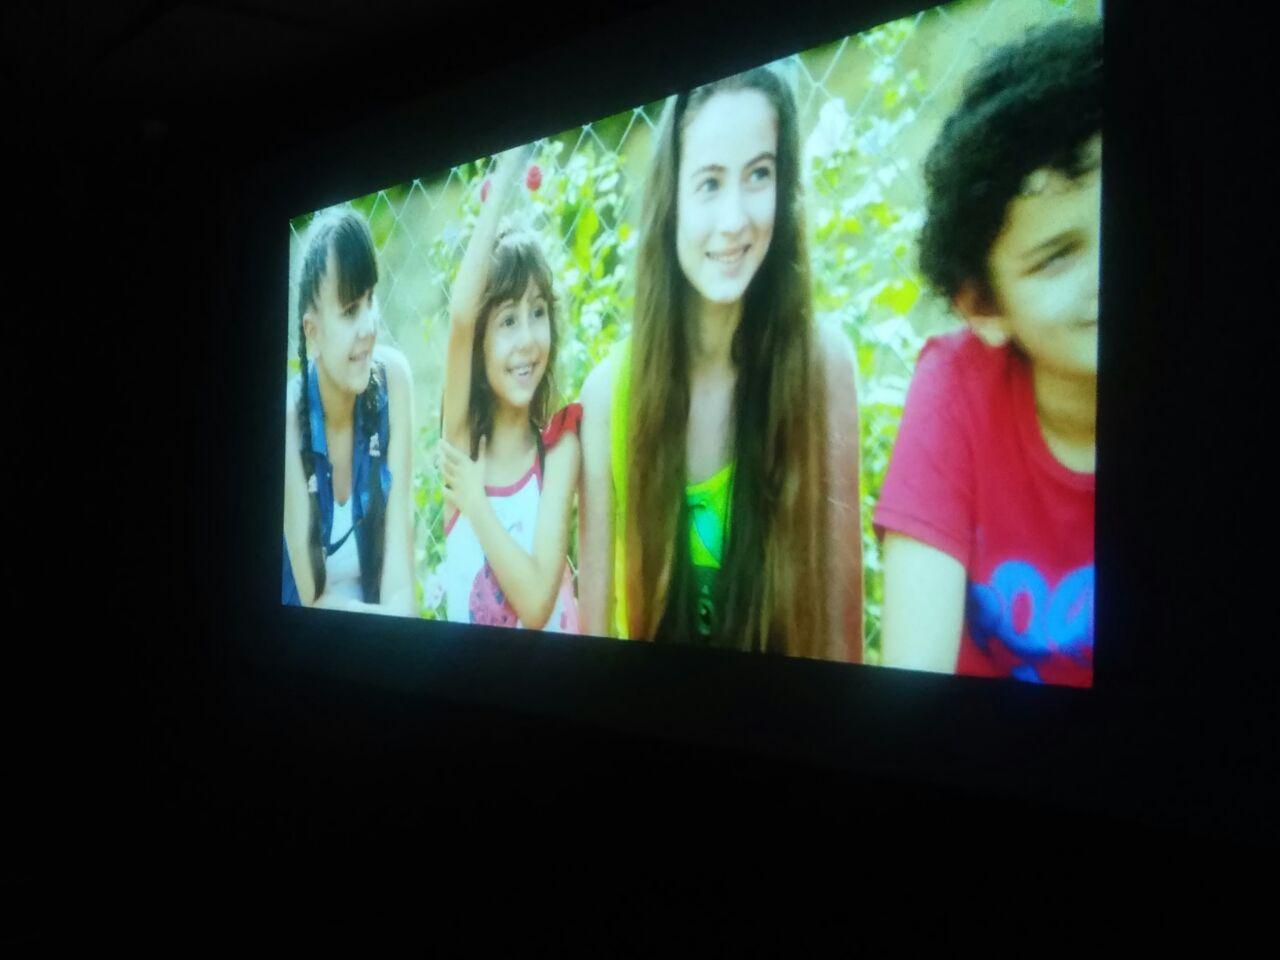 Nizami Kino Mərkəzində İctimayi Birliyin himayəsində olan uşaqlar üçün film nümayiş olunub (FOTO)